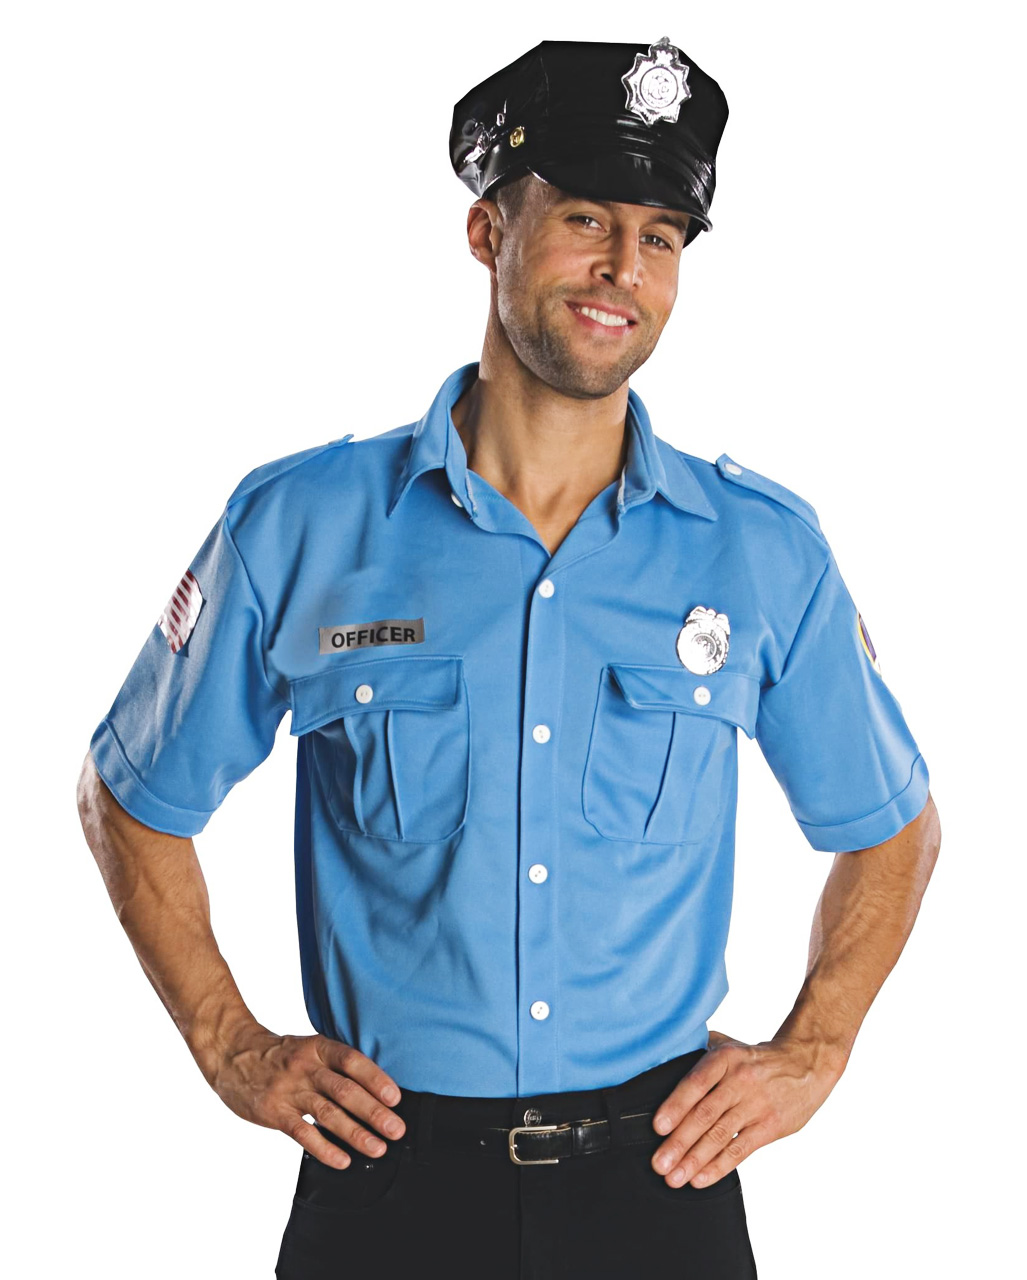 police officer herrenkostuem uniform kostueme police officer adult costume 31201 2